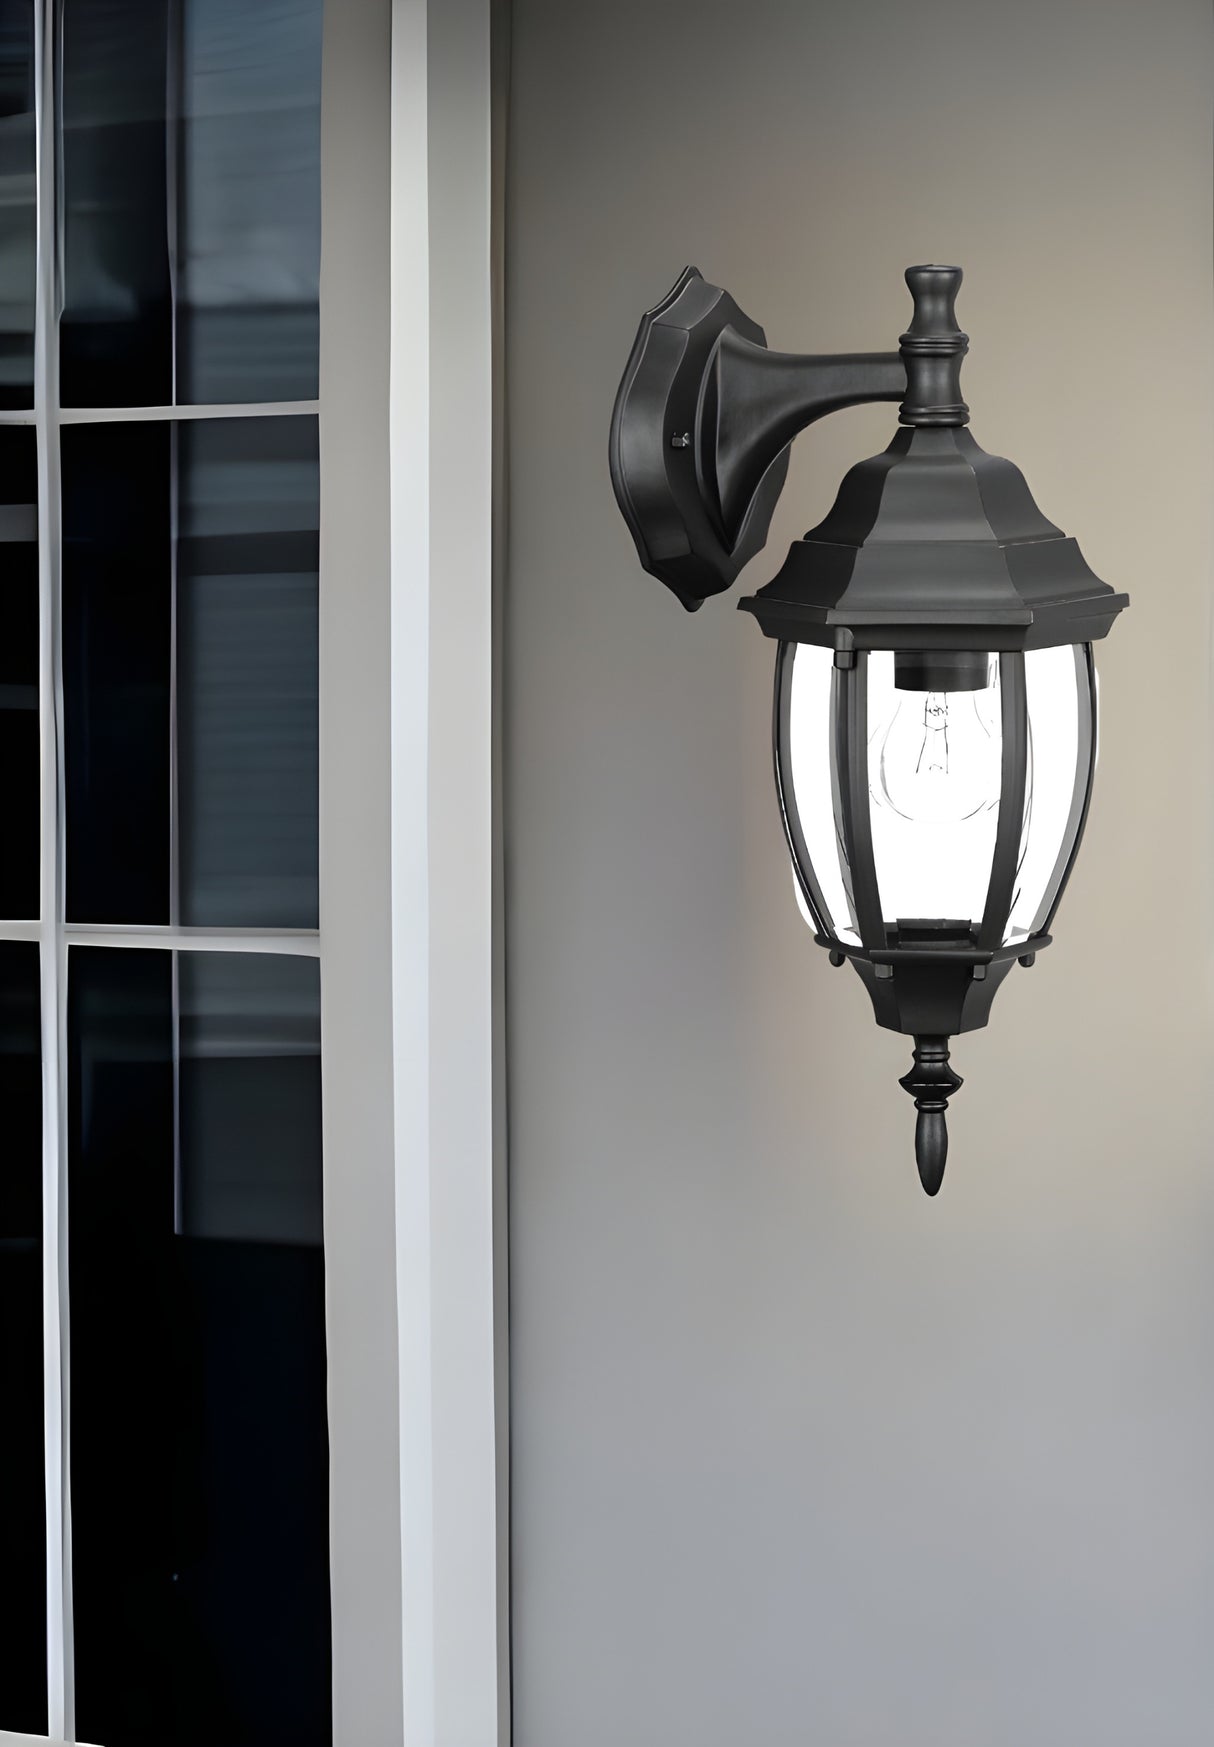 Matte Black Hanging Globe Lantern Wall Light